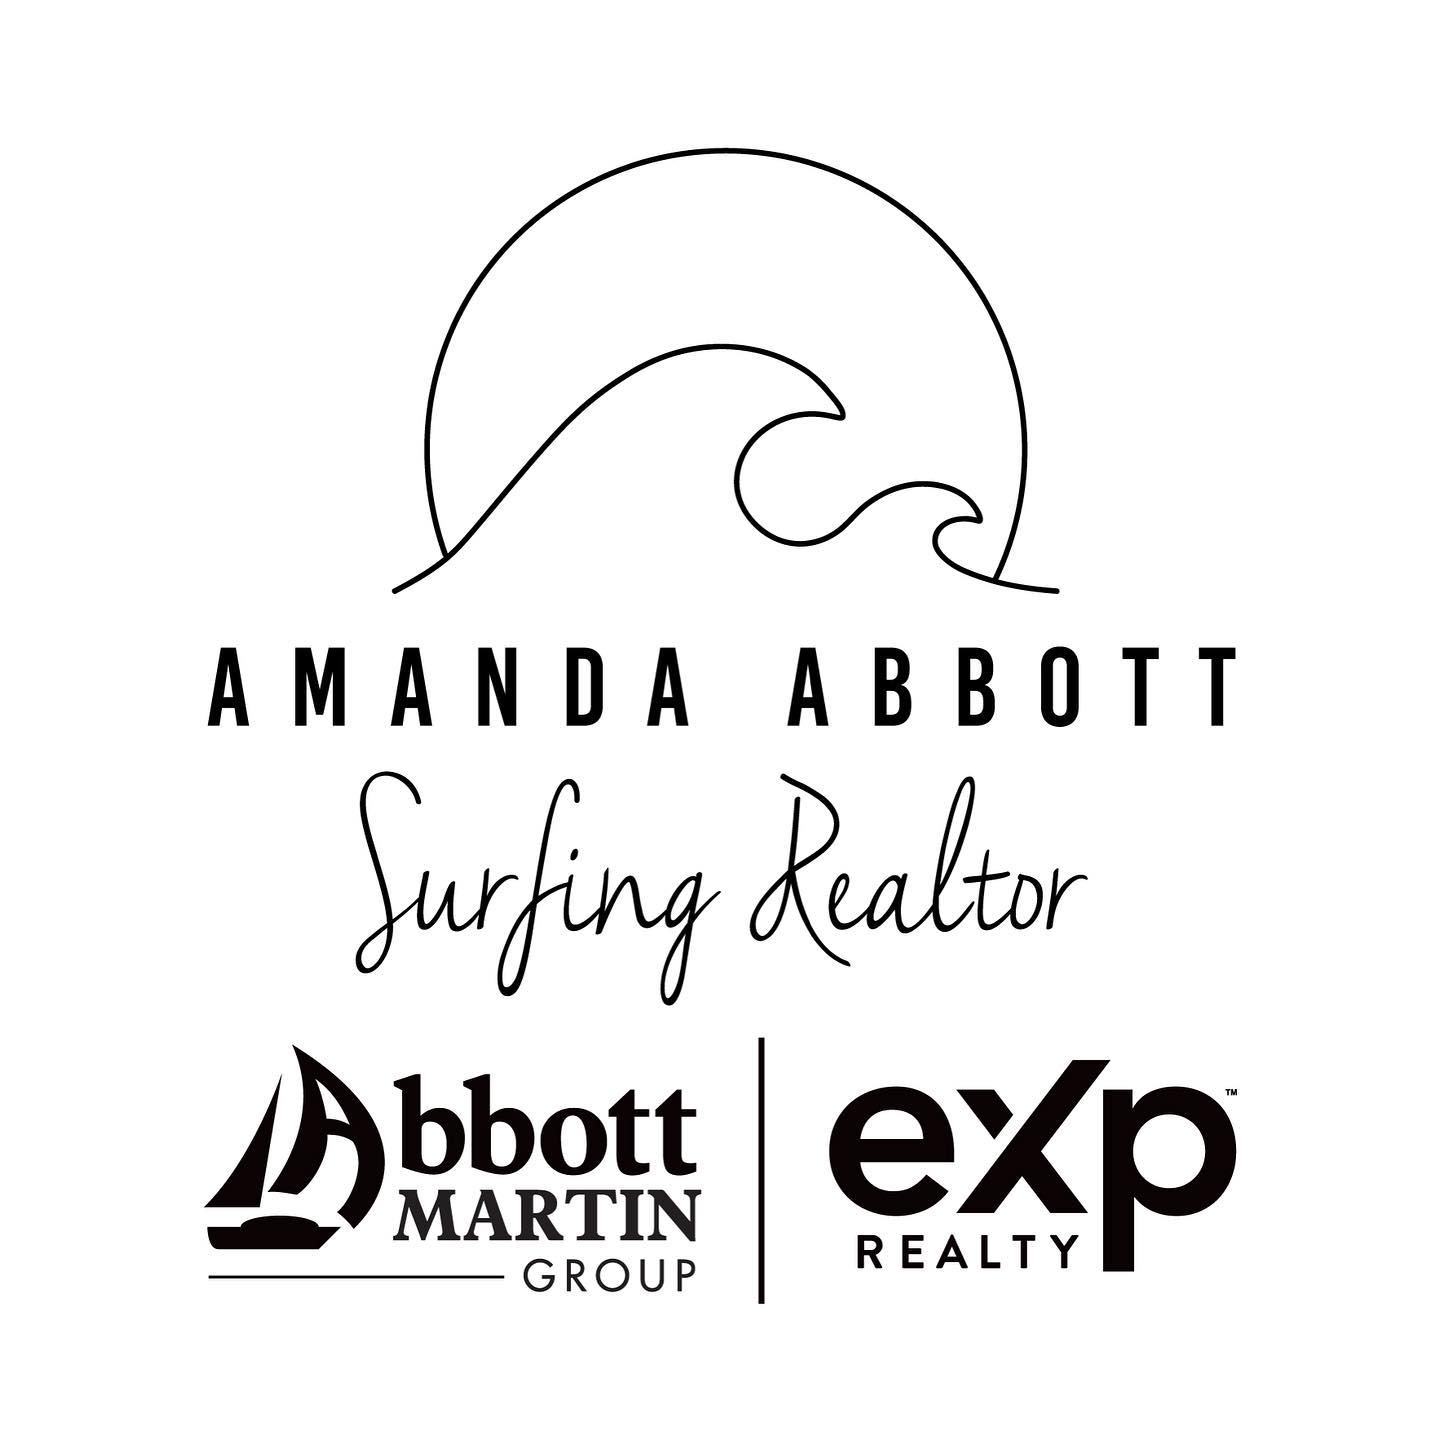 Amanda Abbott - The Surfing Realtor